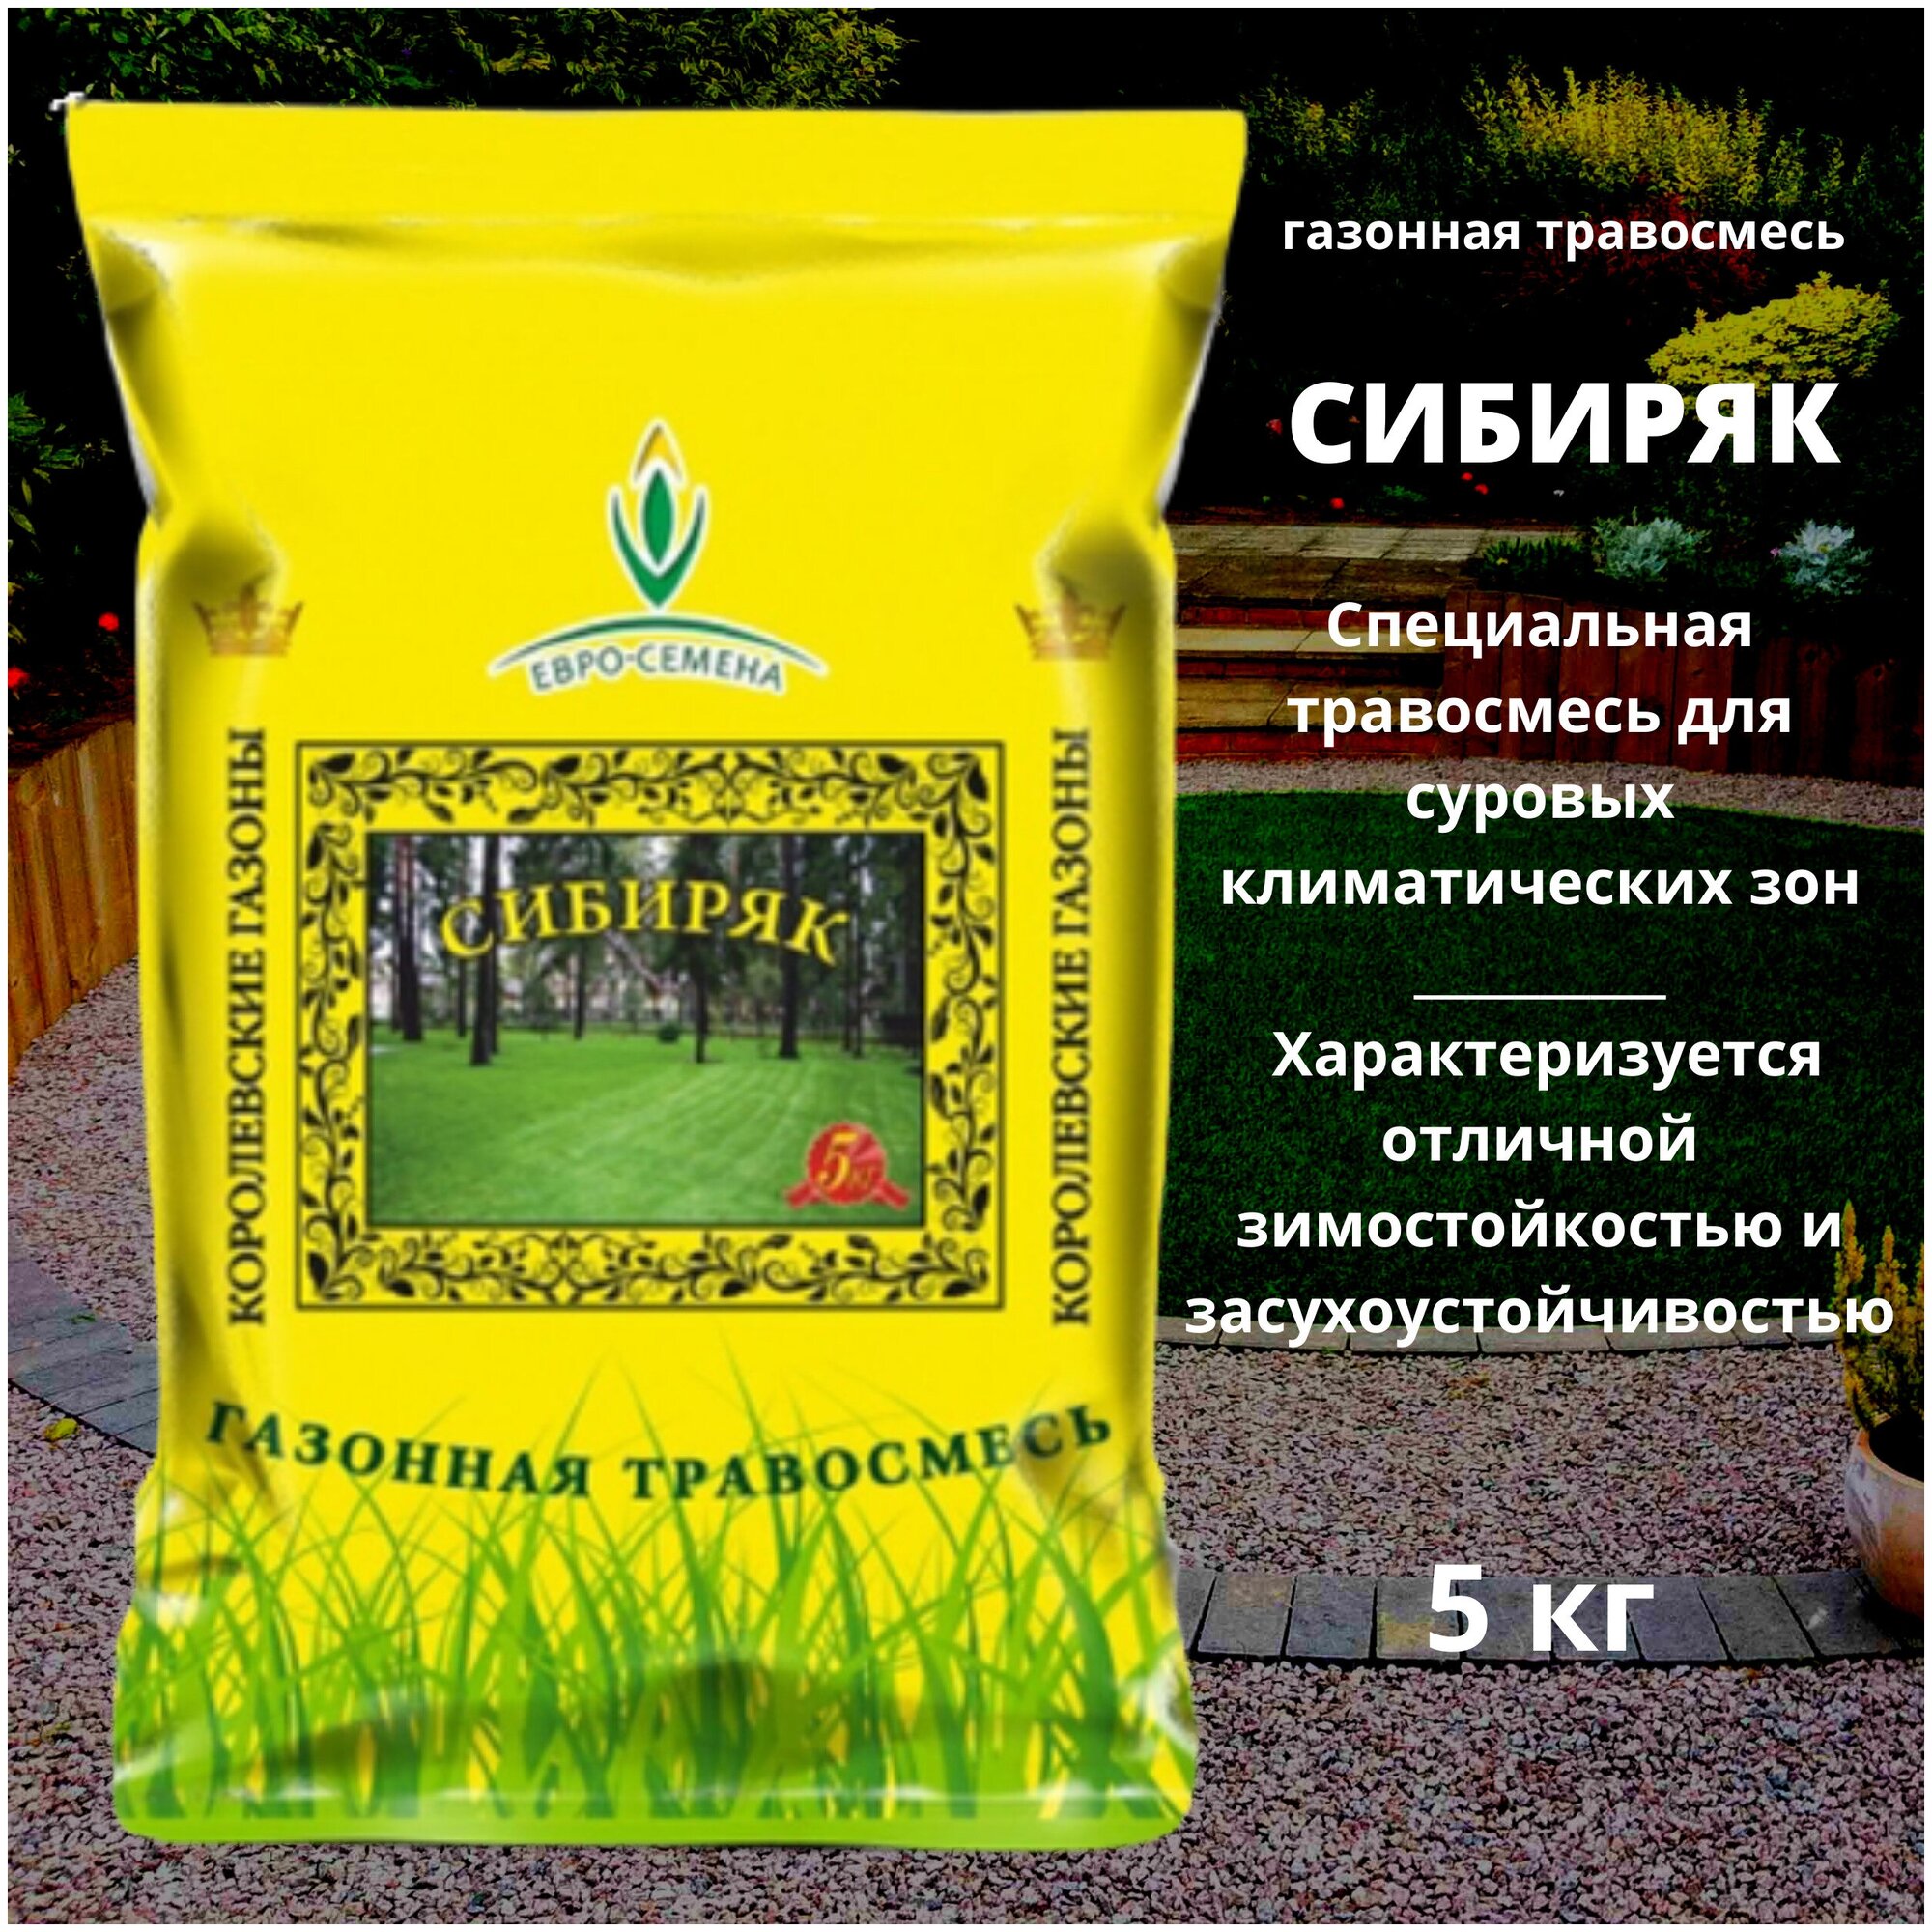 Газонная травосмесь (семена) Сибиряк 5 кг для суровых климатических зон